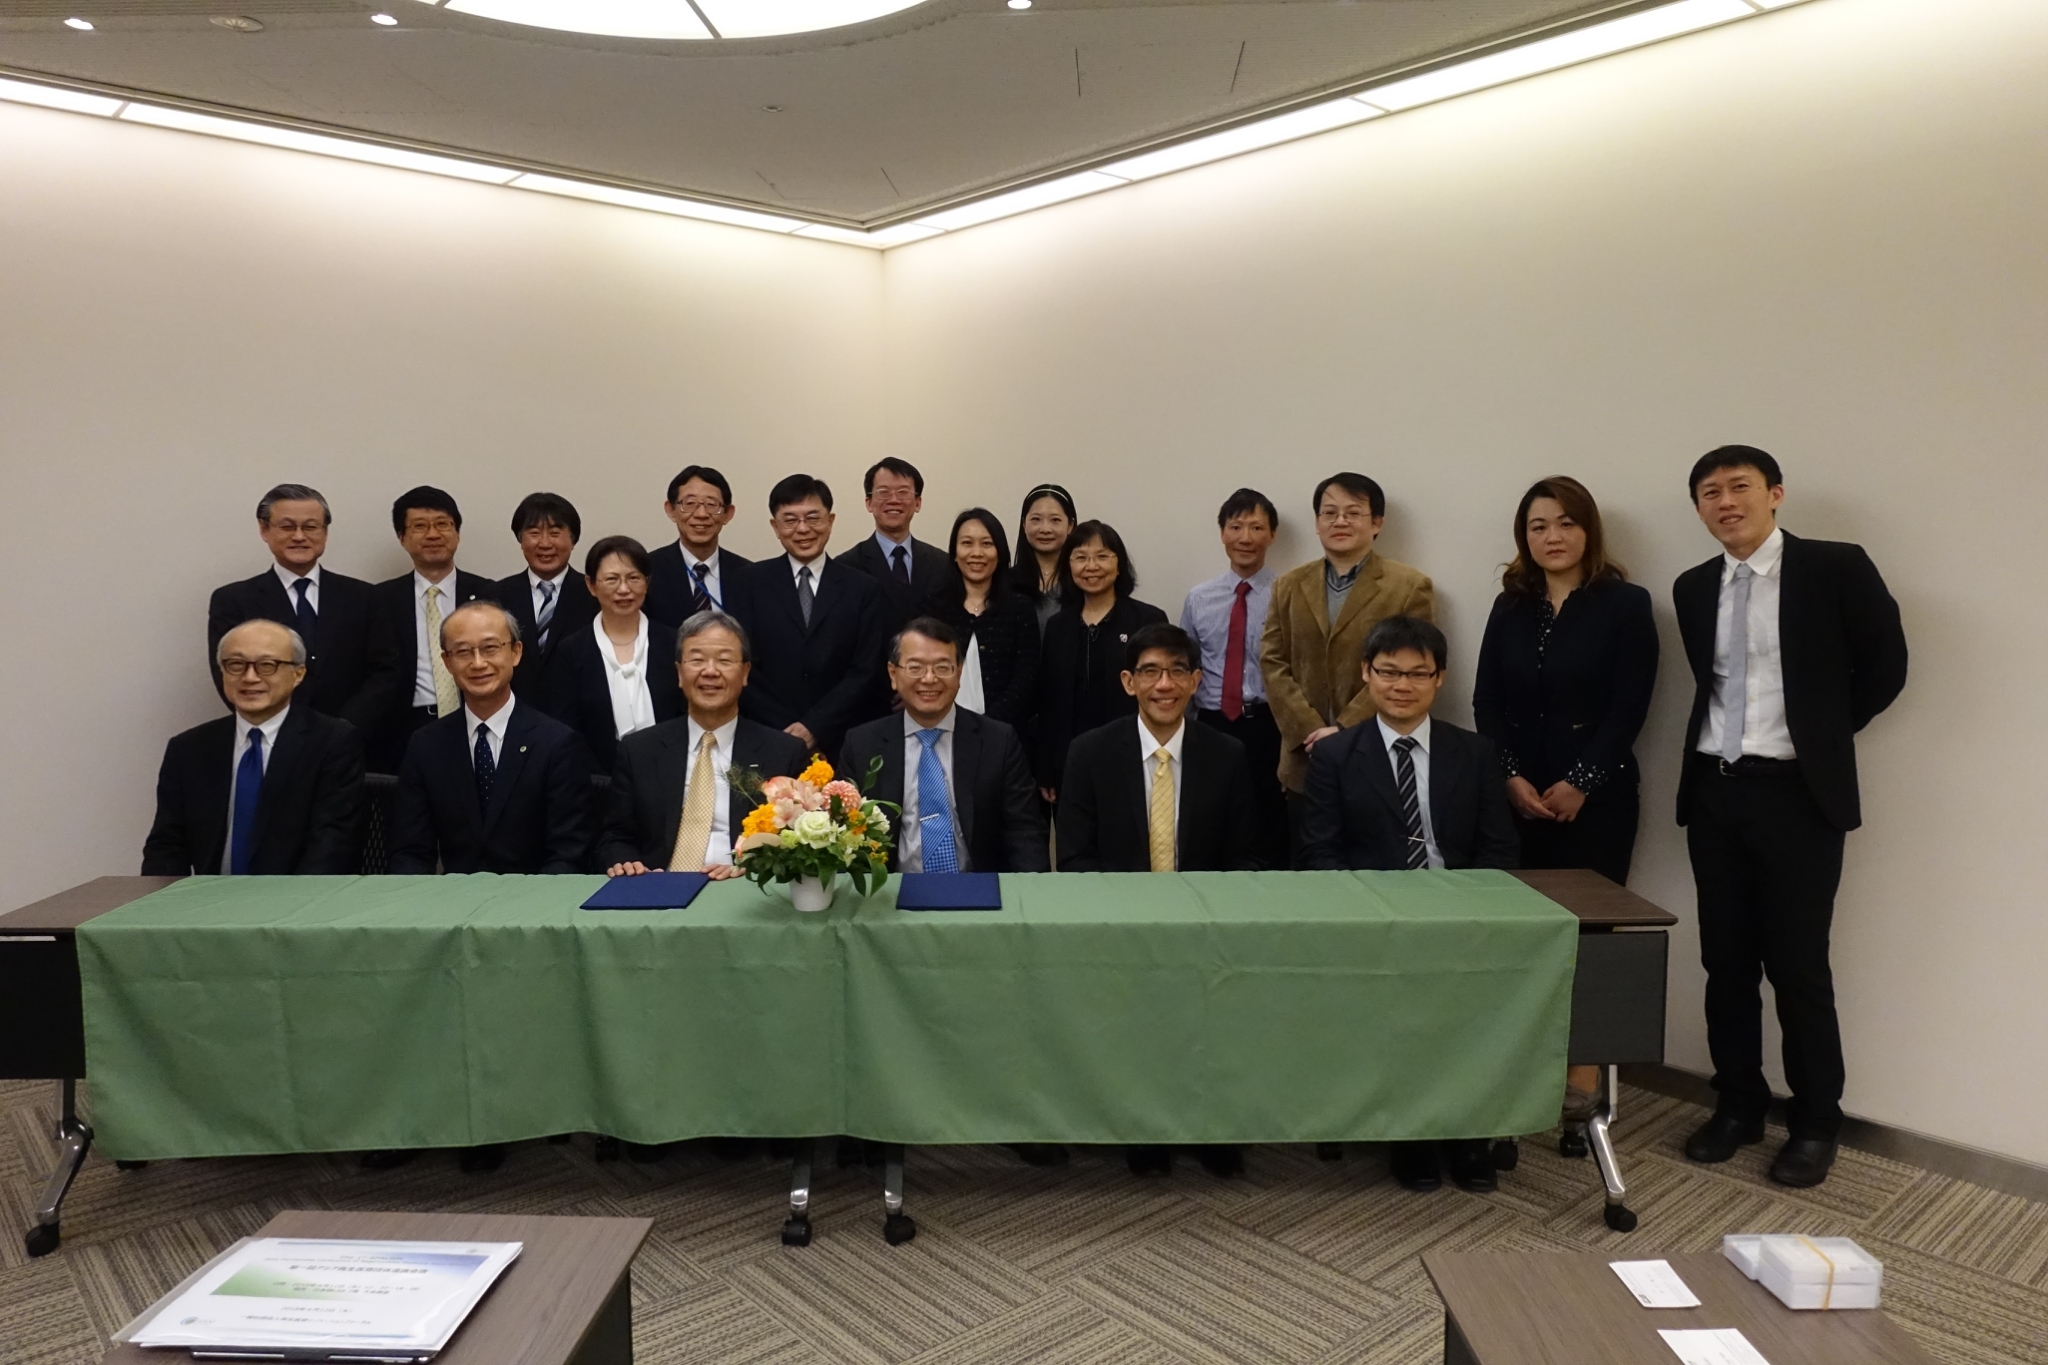 生醫推動小組(BPIPO)吳忠勳主任代表與日本再生醫療論壇組織(FIRM)戶田雄三會長於4月11日上午簽署合作備忘錄，並彼此團隊合照，記錄這一刻。